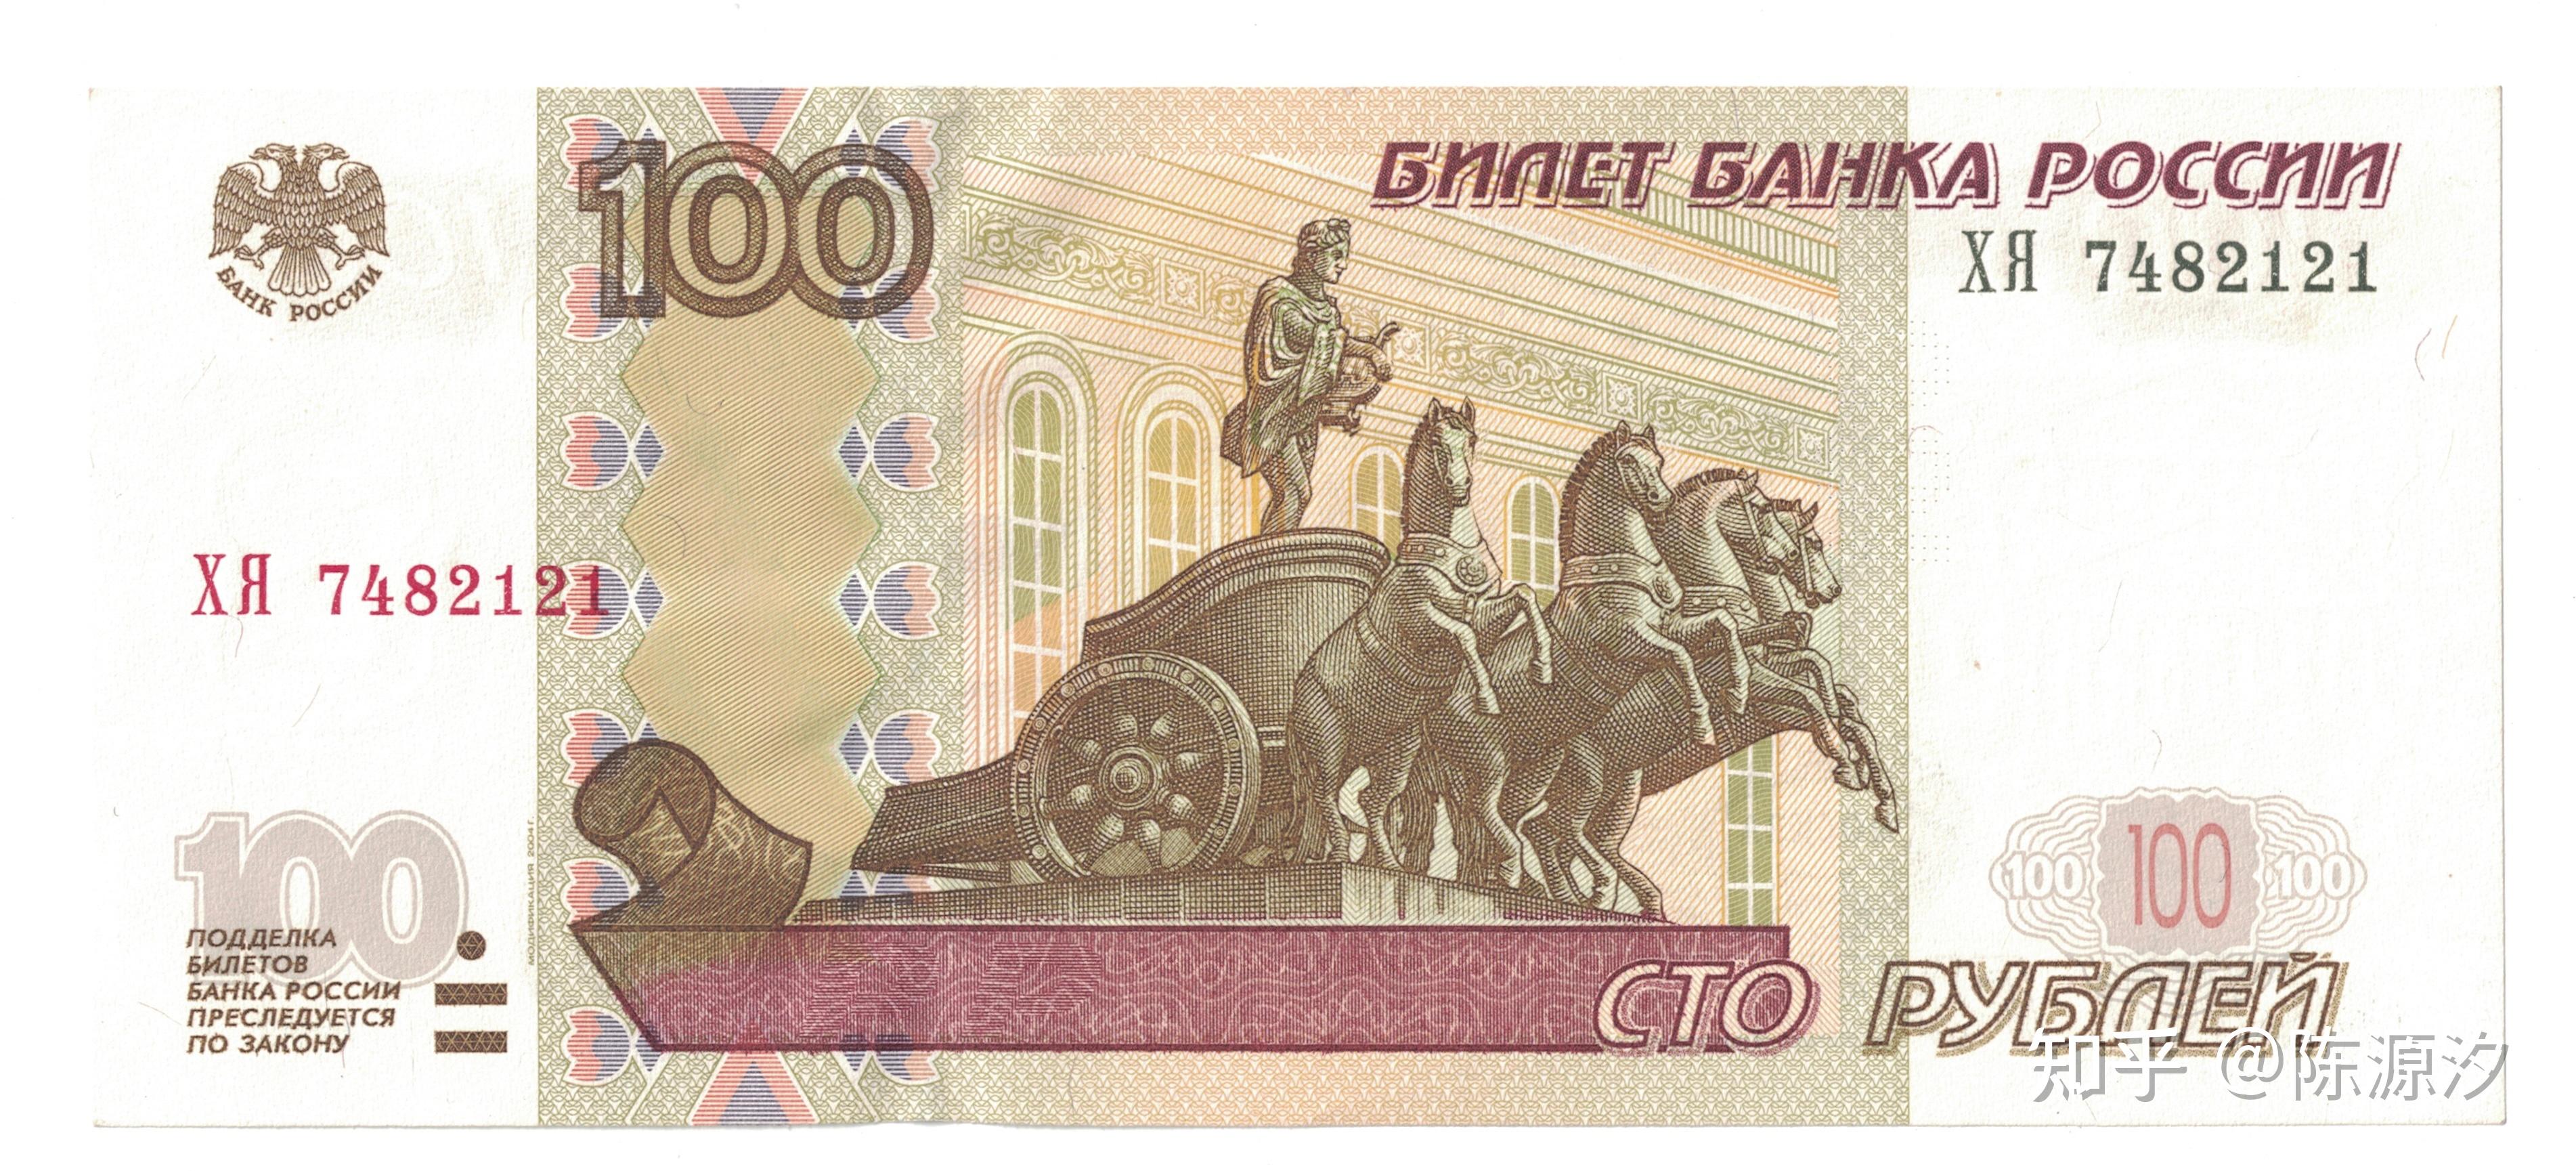 分散的钞票背景-俄罗斯卢布不同面额高清摄影大图-千库网